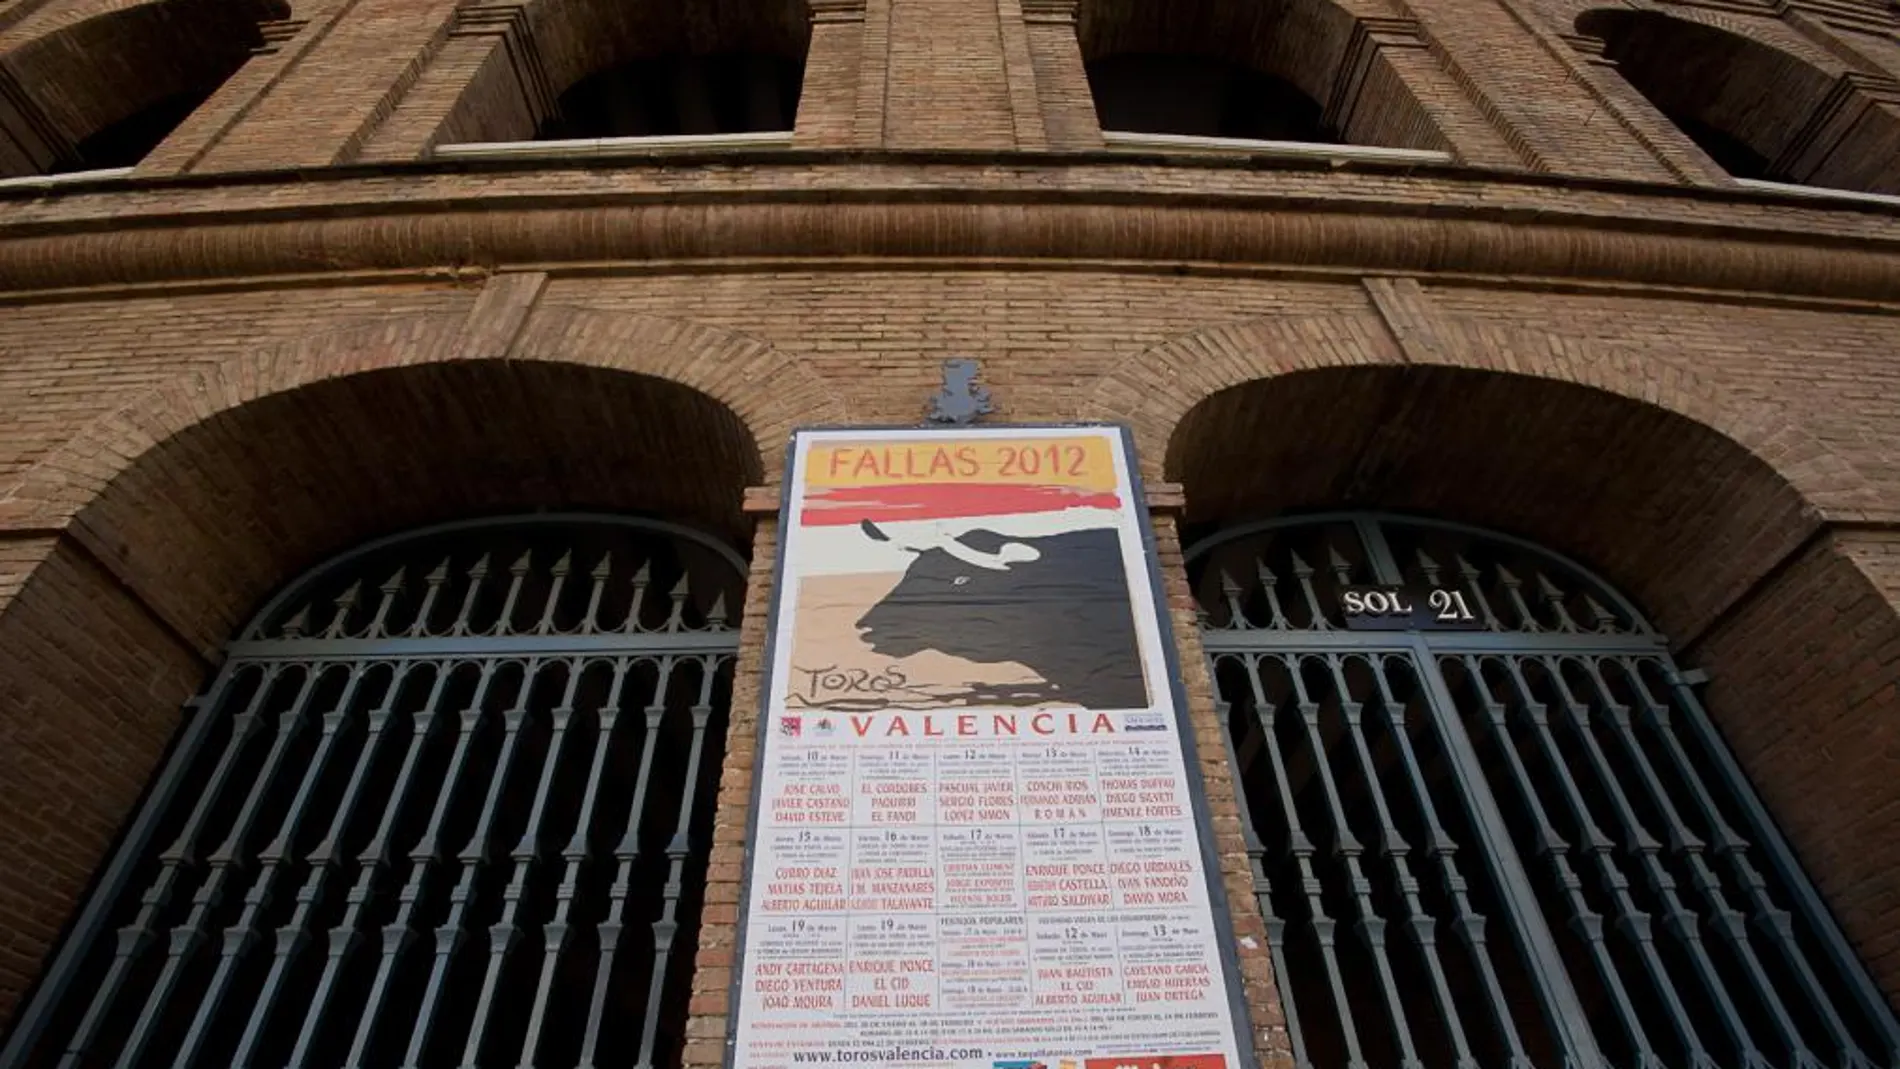 Una nueva peña taurina premiará el valor en la plaza de Valencia